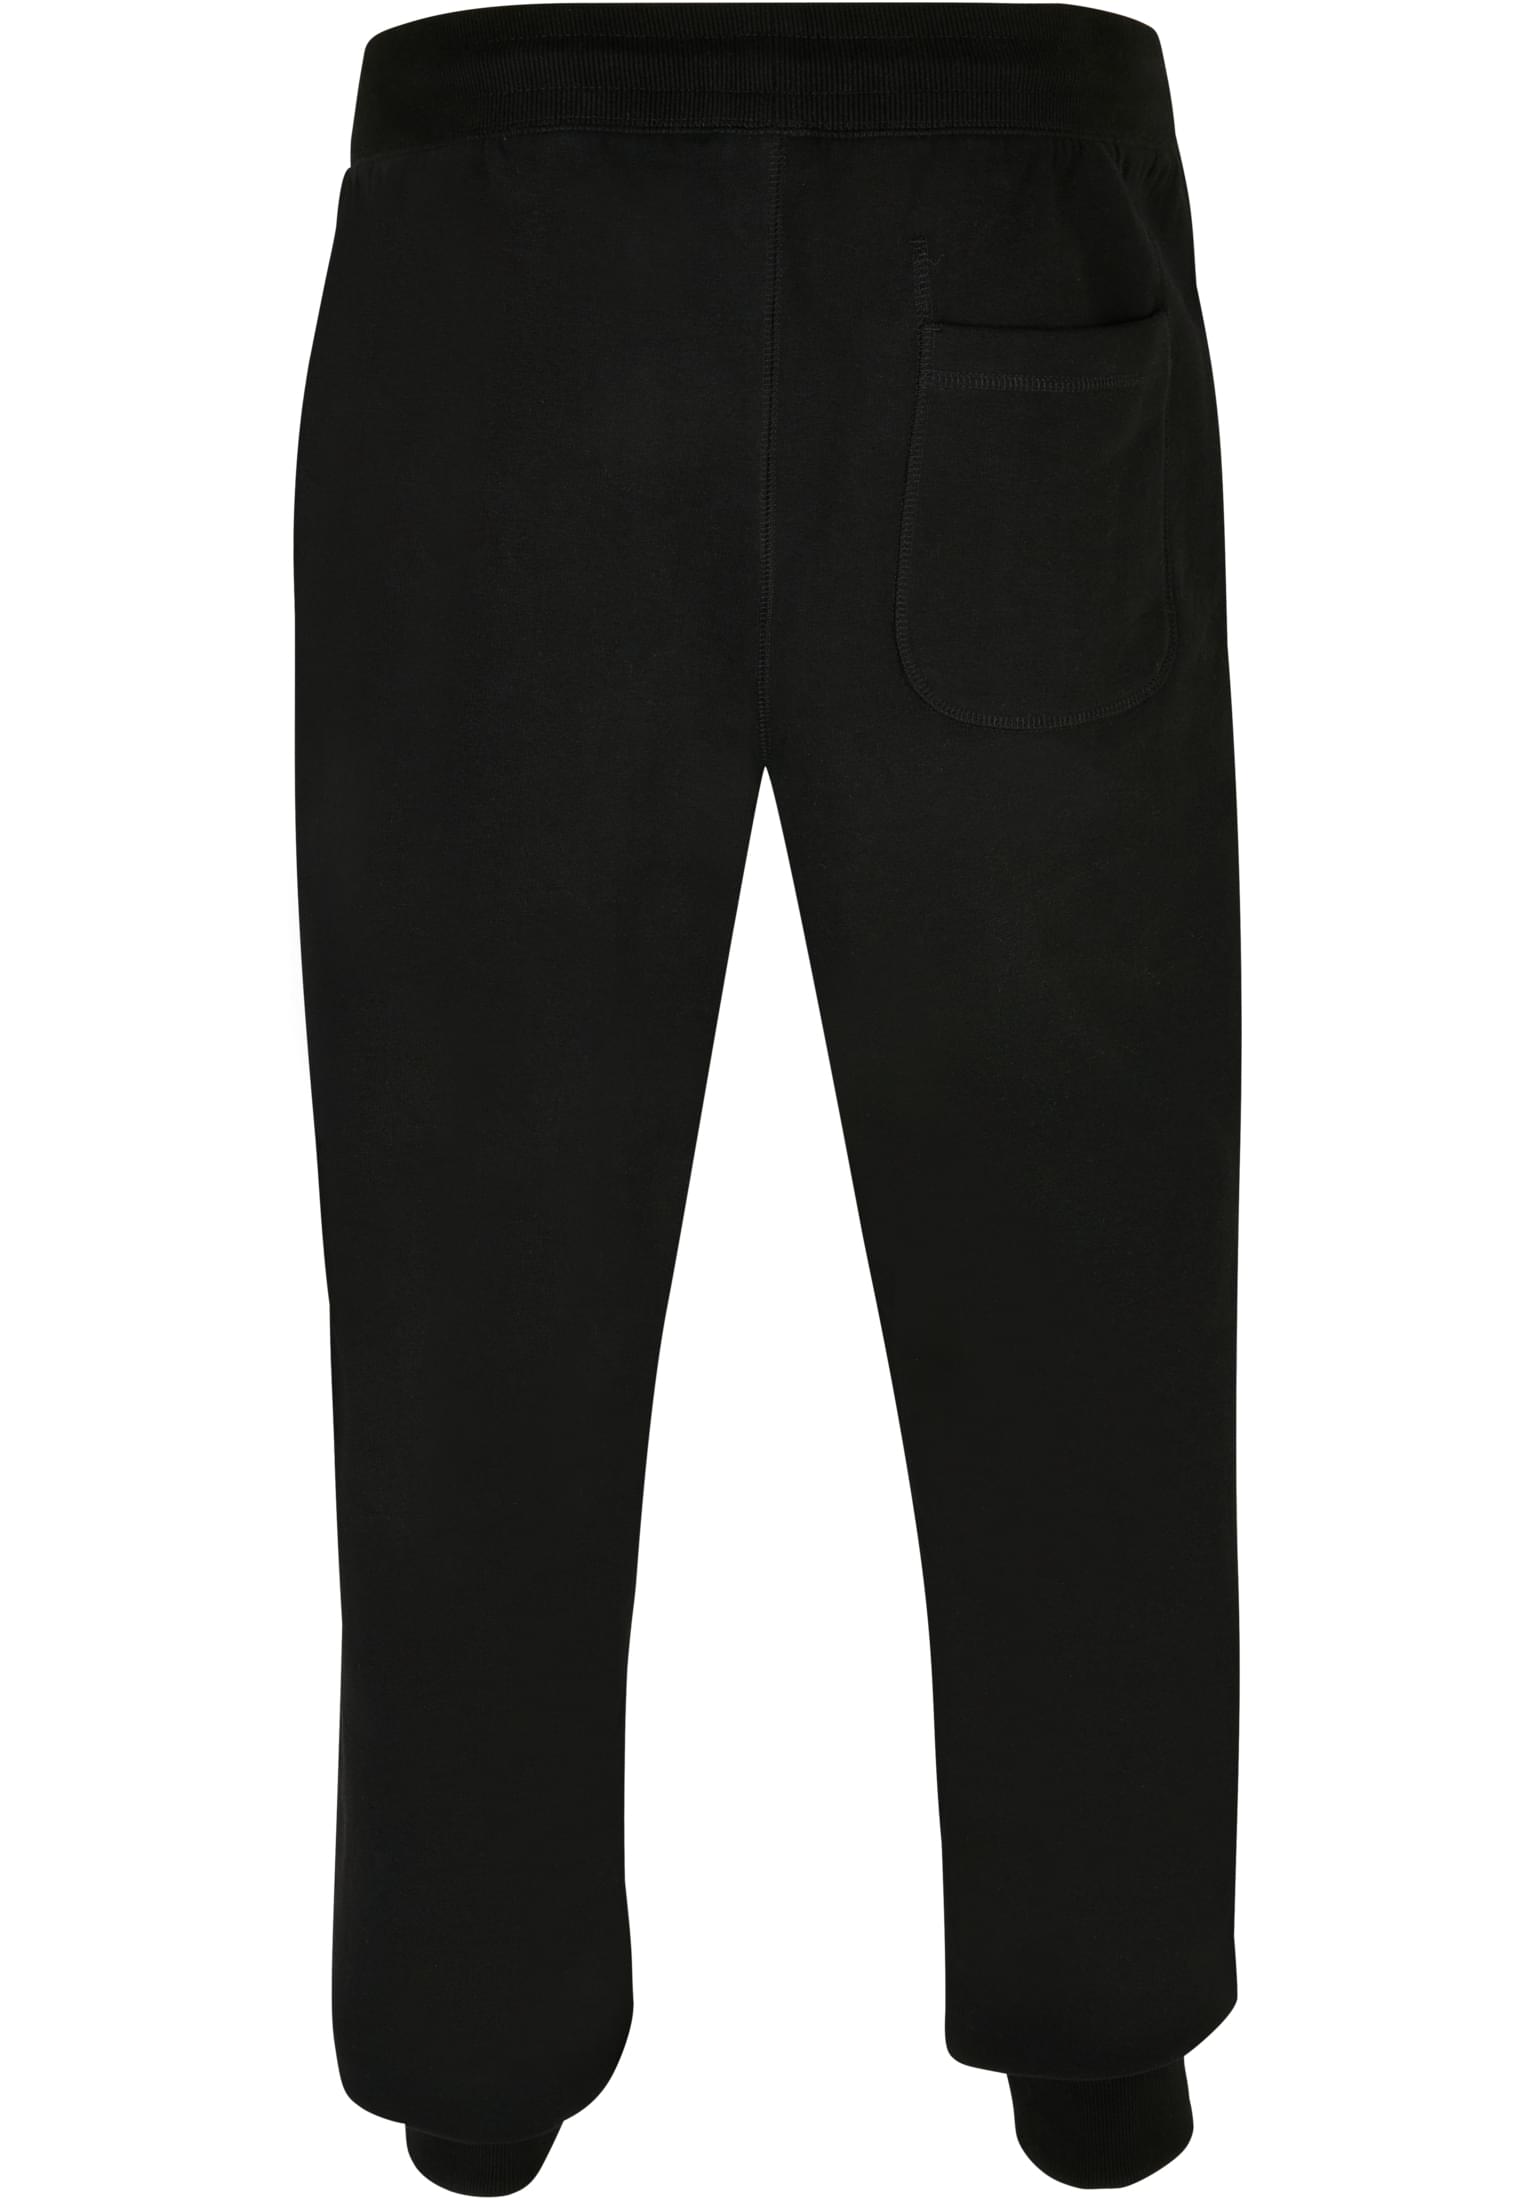 Herren Basic Sweatpants in Farbe black